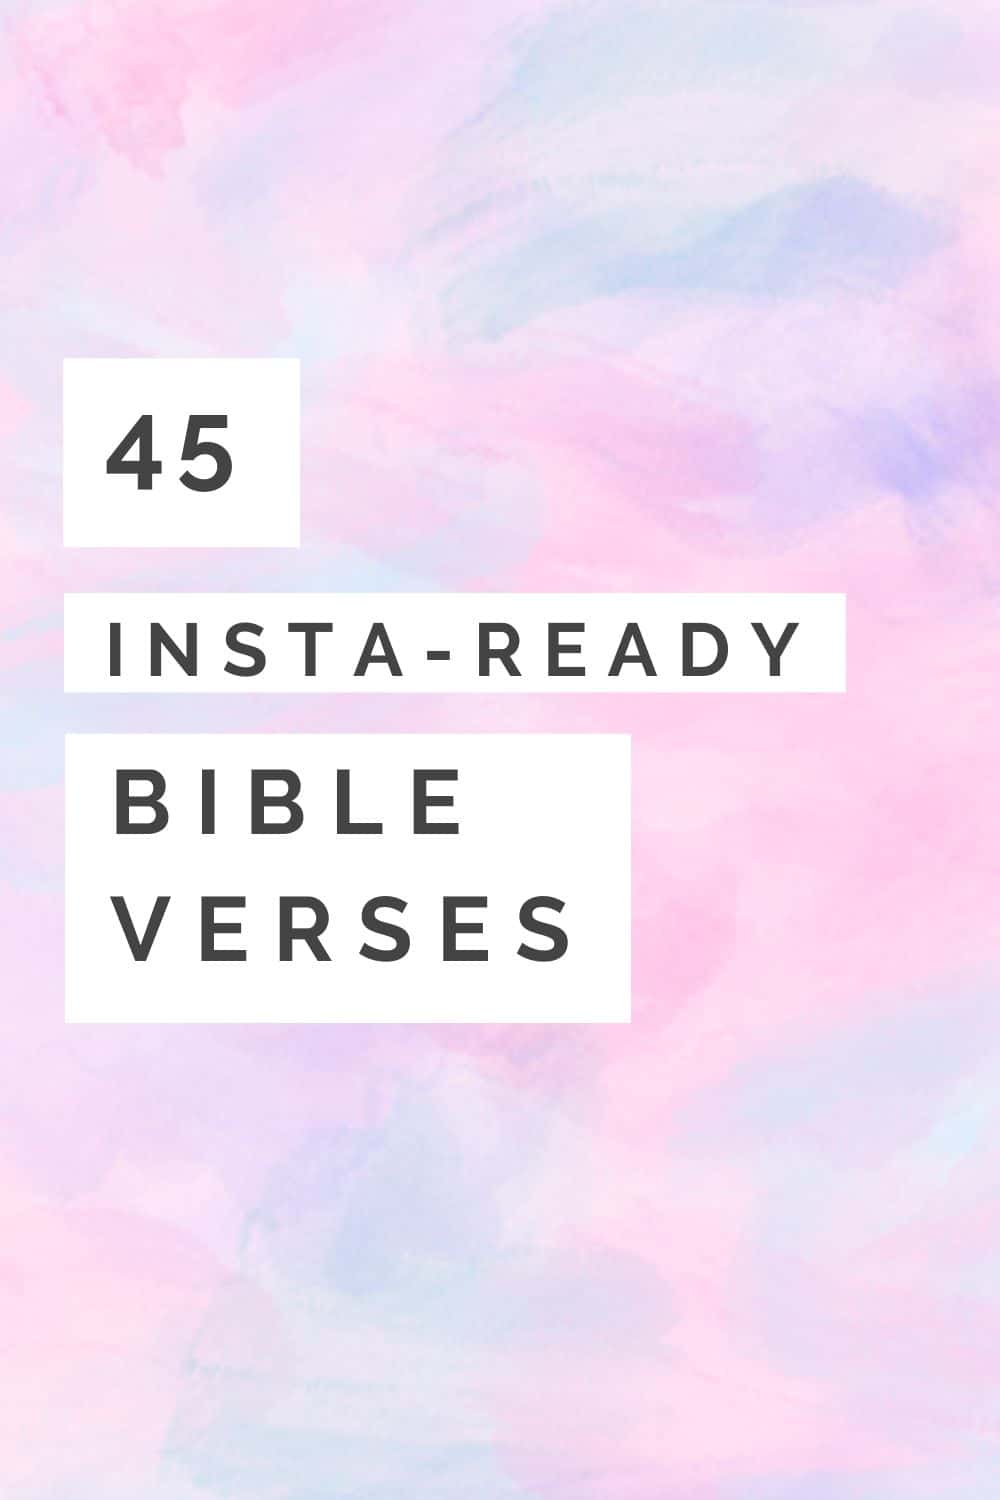 Bible Verses For Instagram Bio 